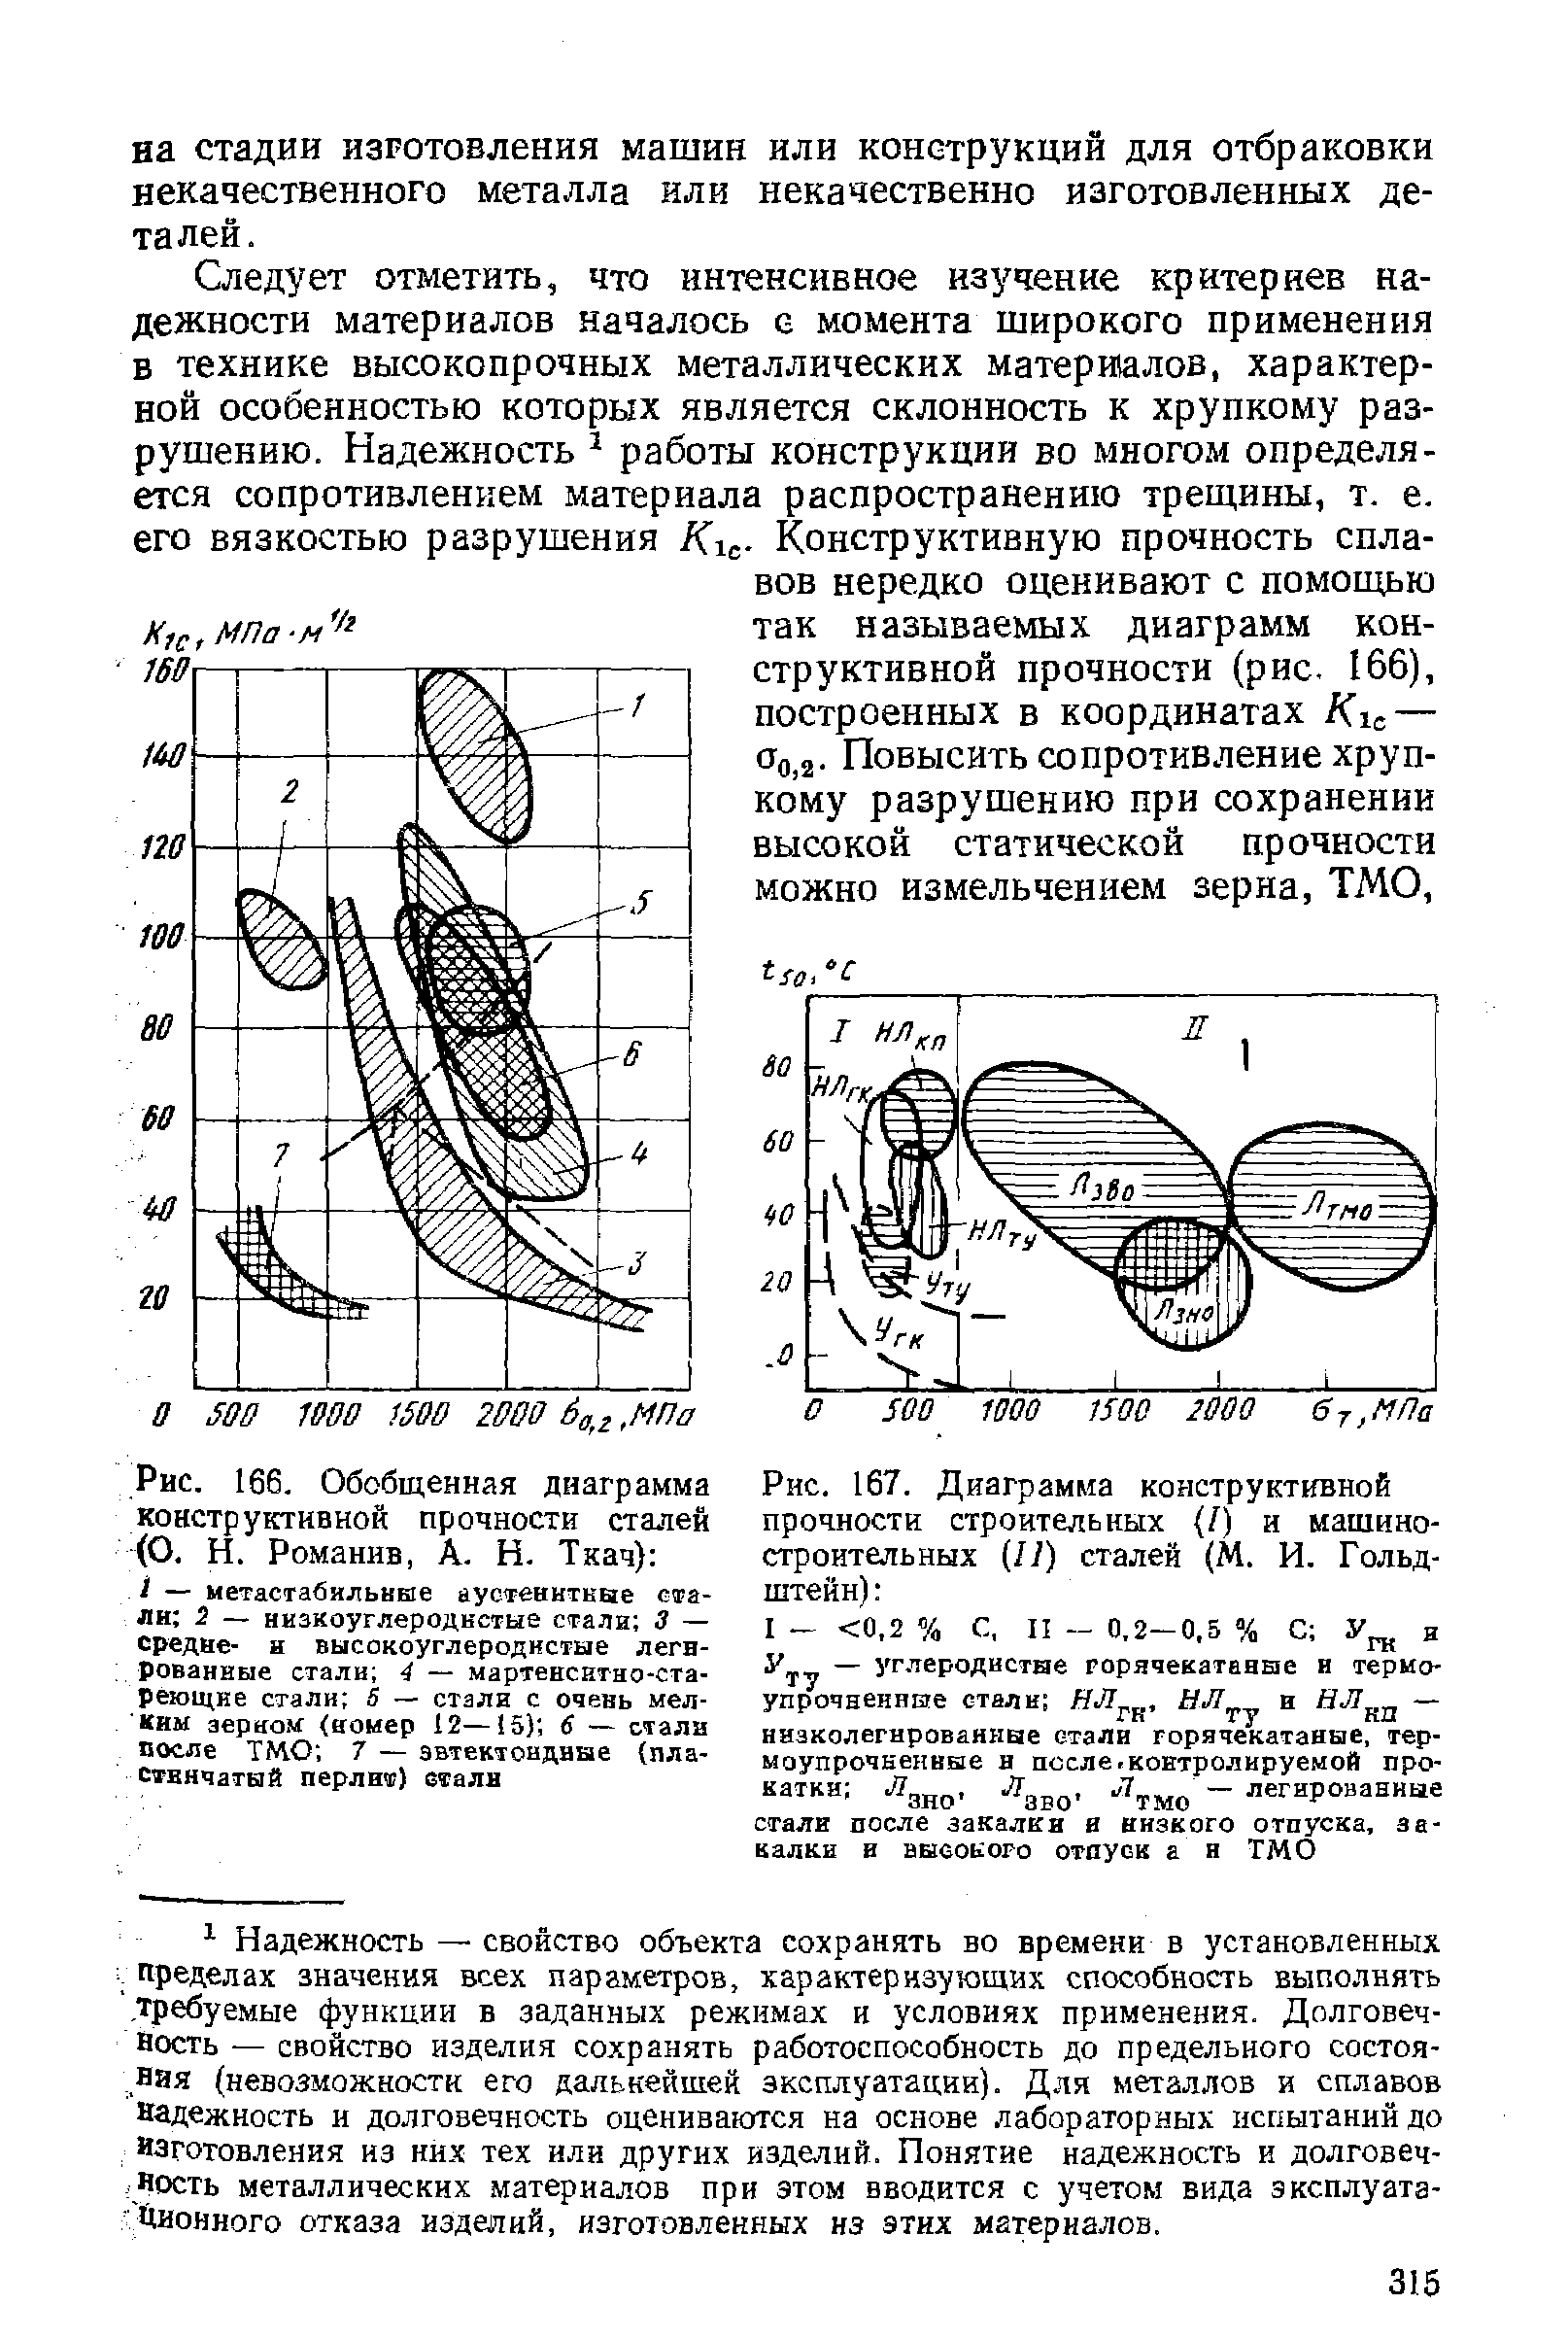 Рис. 166. Обобщенная диаграмма конструктивной прочности сталей (О. Н. Романив, А. Н. Ткач) 
